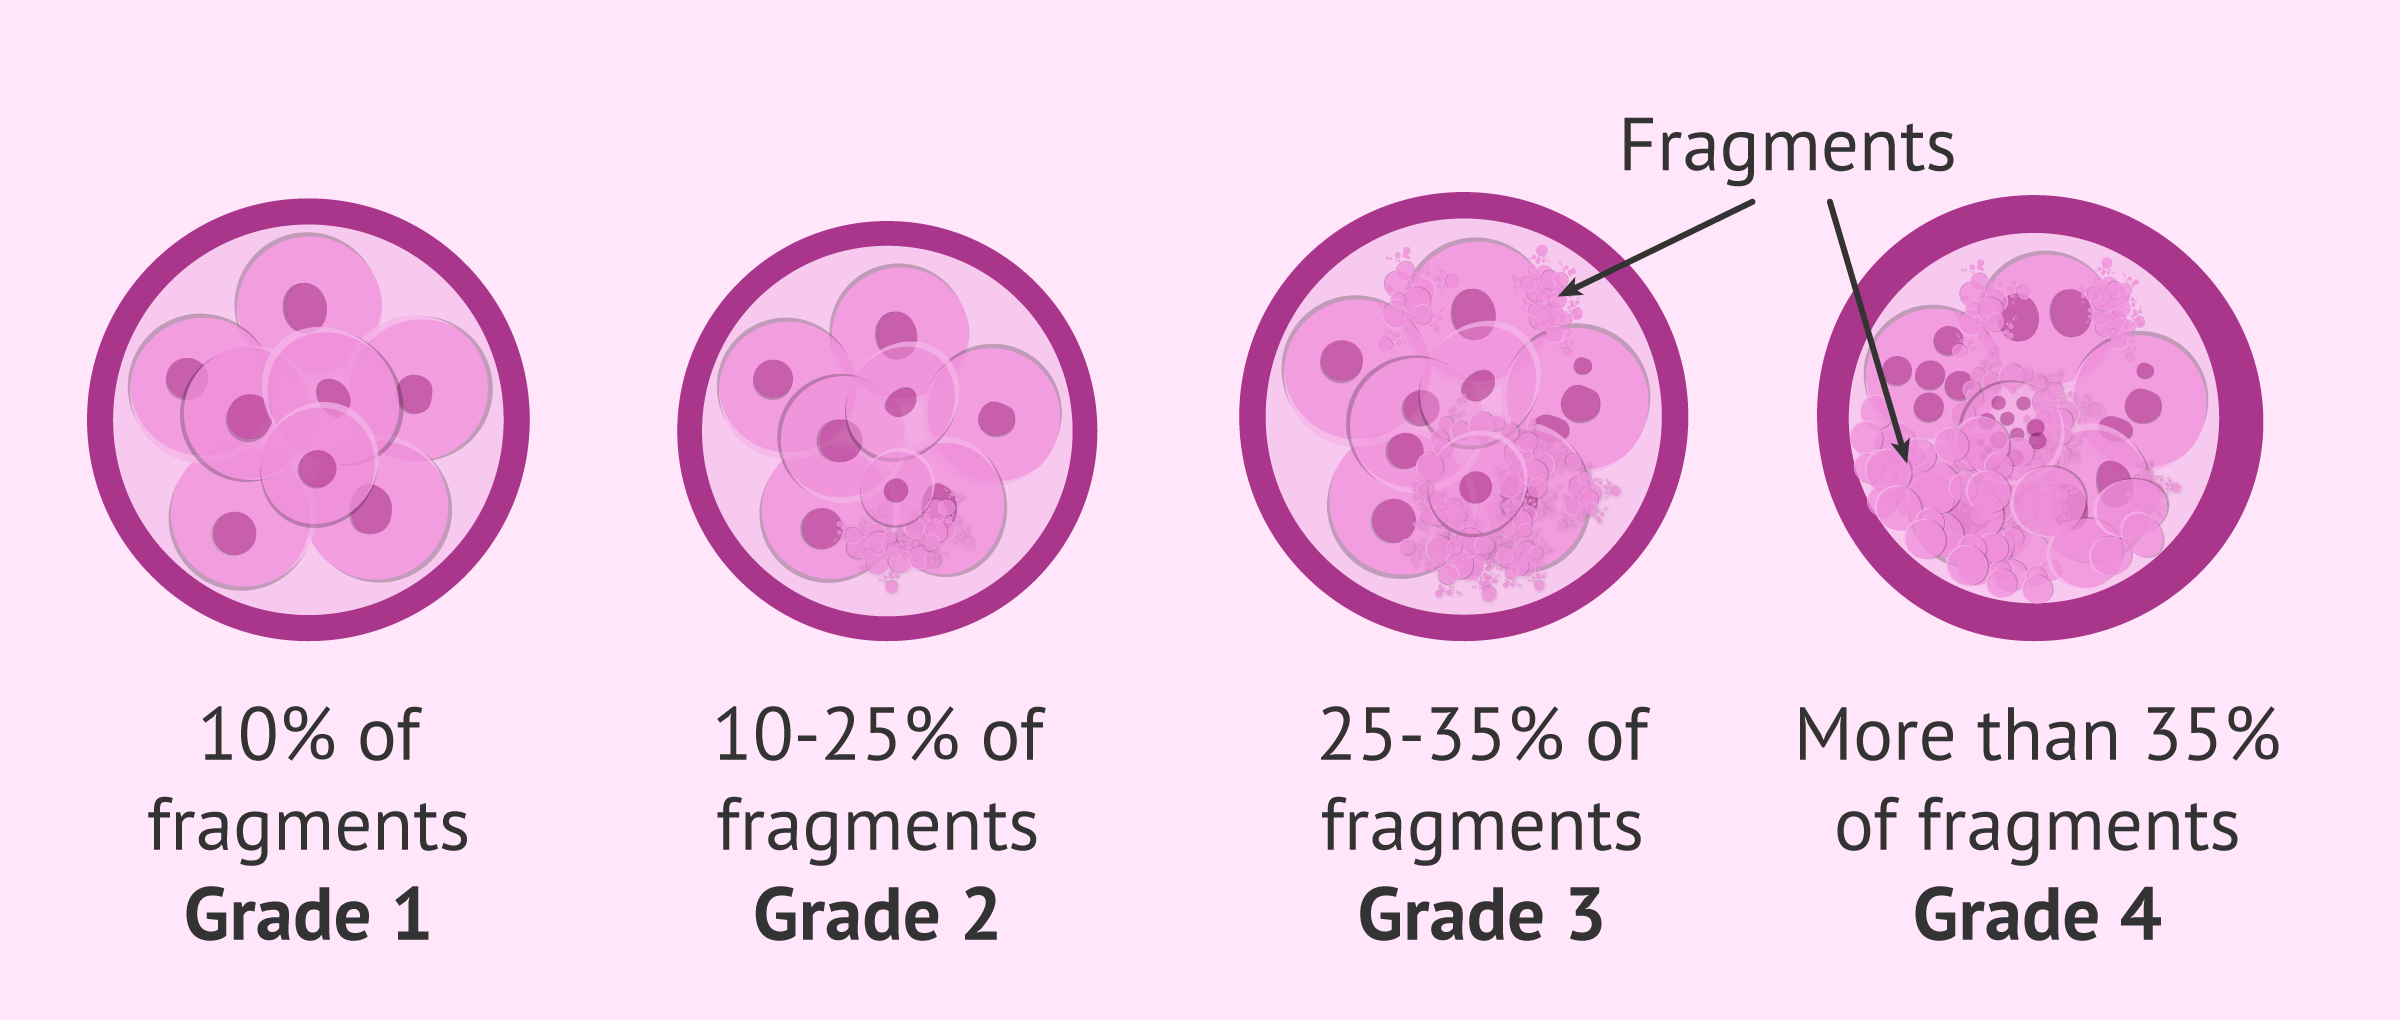 degree-embryo-fragmentation